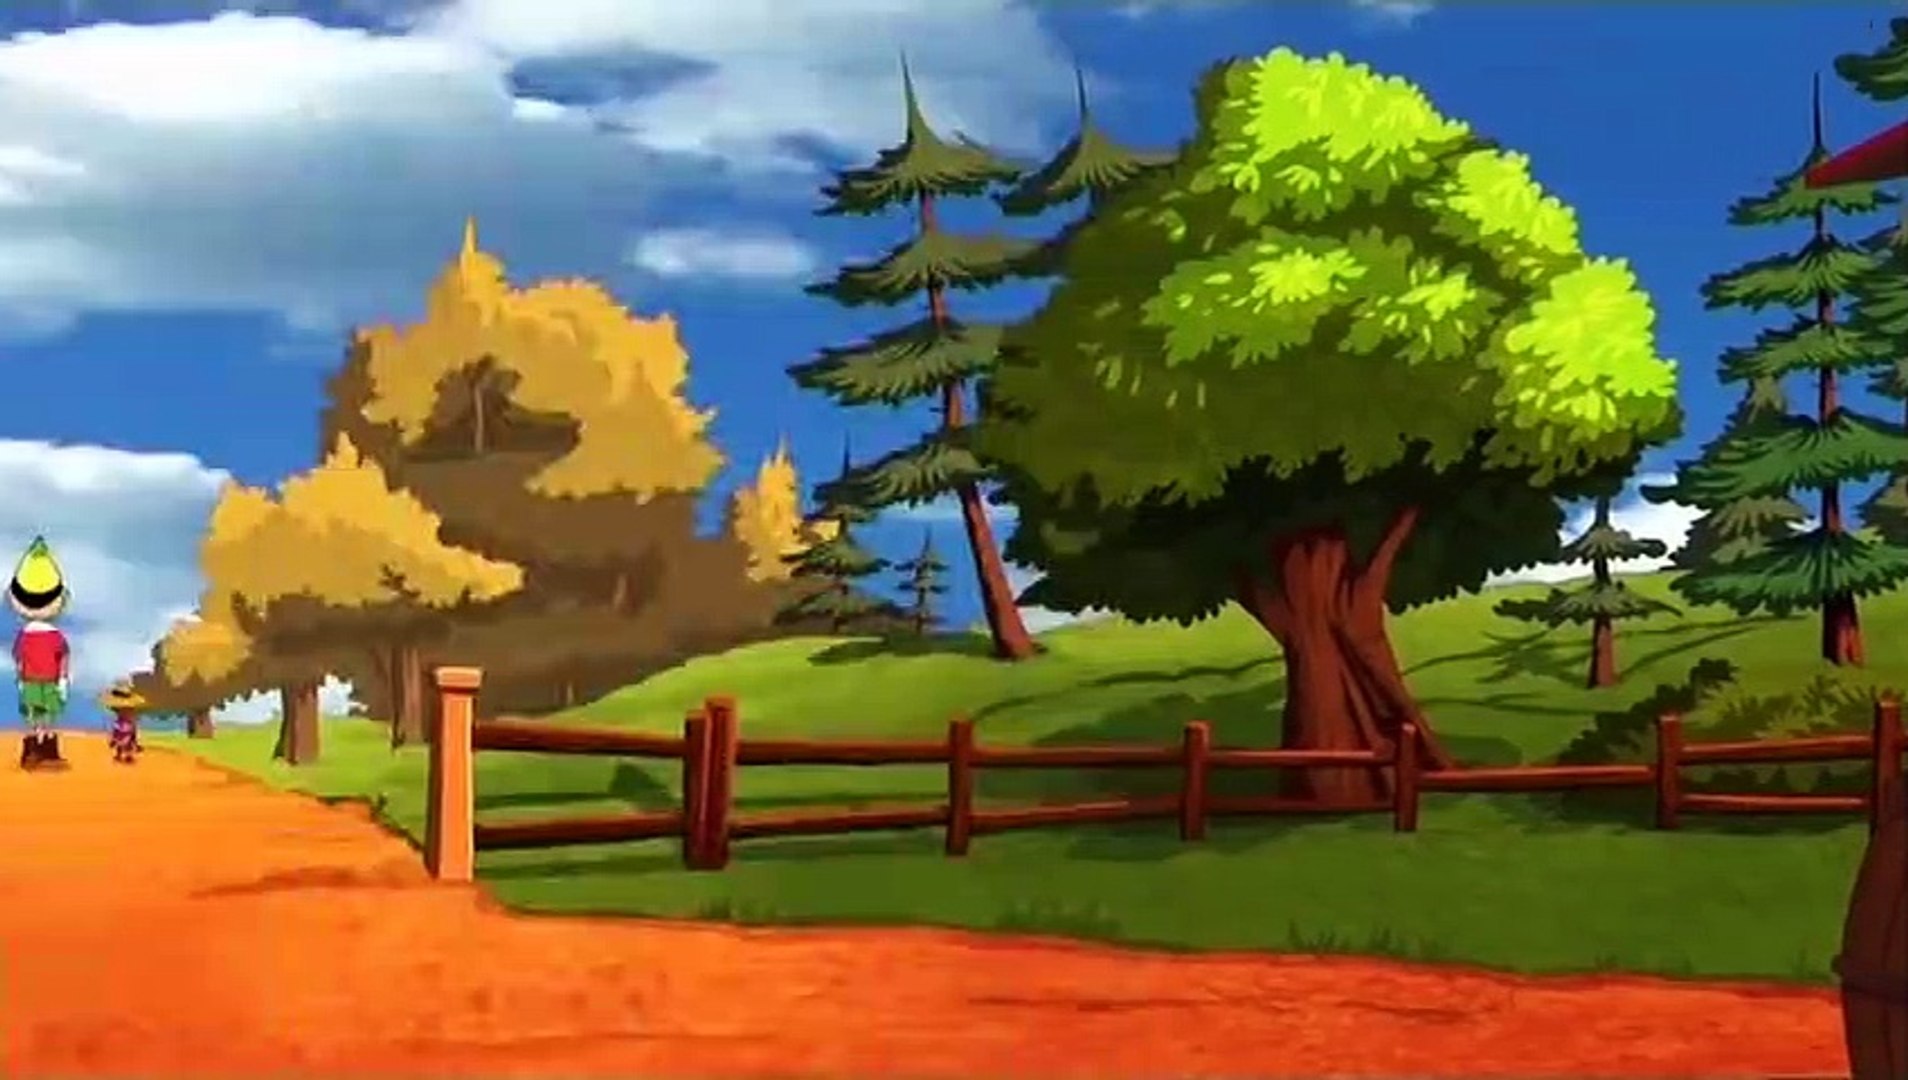 Pinocchio - Simsala Grimm HD | Dessin animé des contes de Grimm -  Dailymotion Video